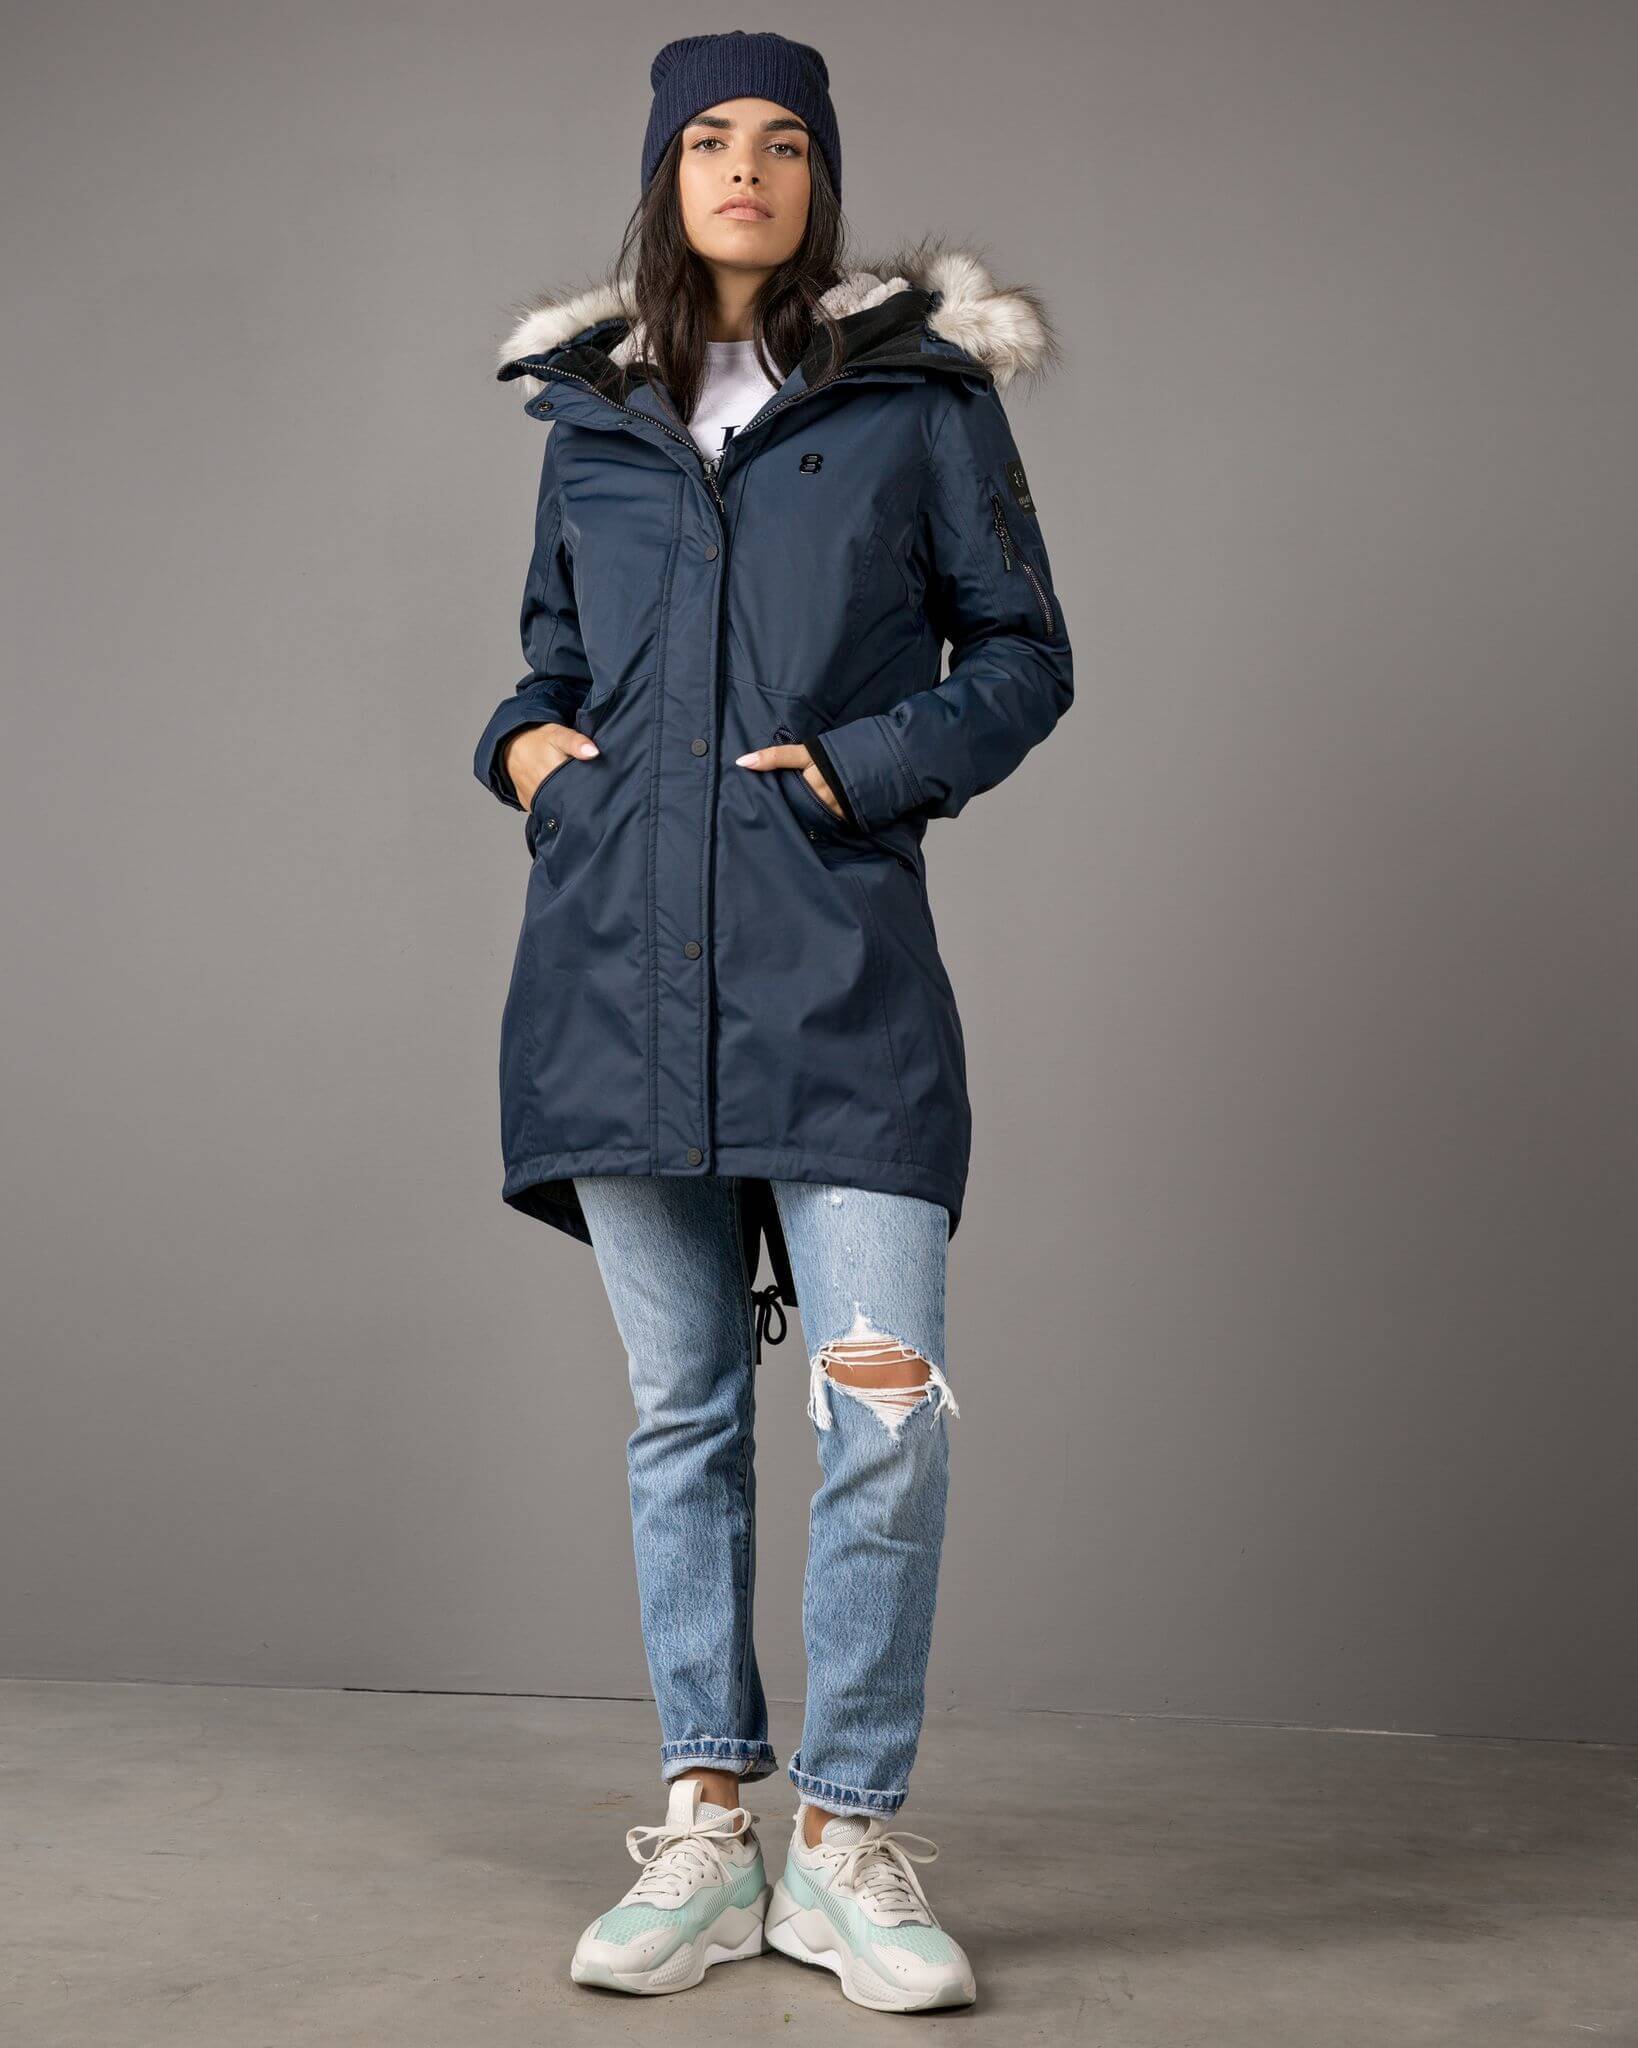 Женская мембранная куртка-парка 8848 Altitude Amiata 223115 купить в  интернет-магазине Five-sport.ru